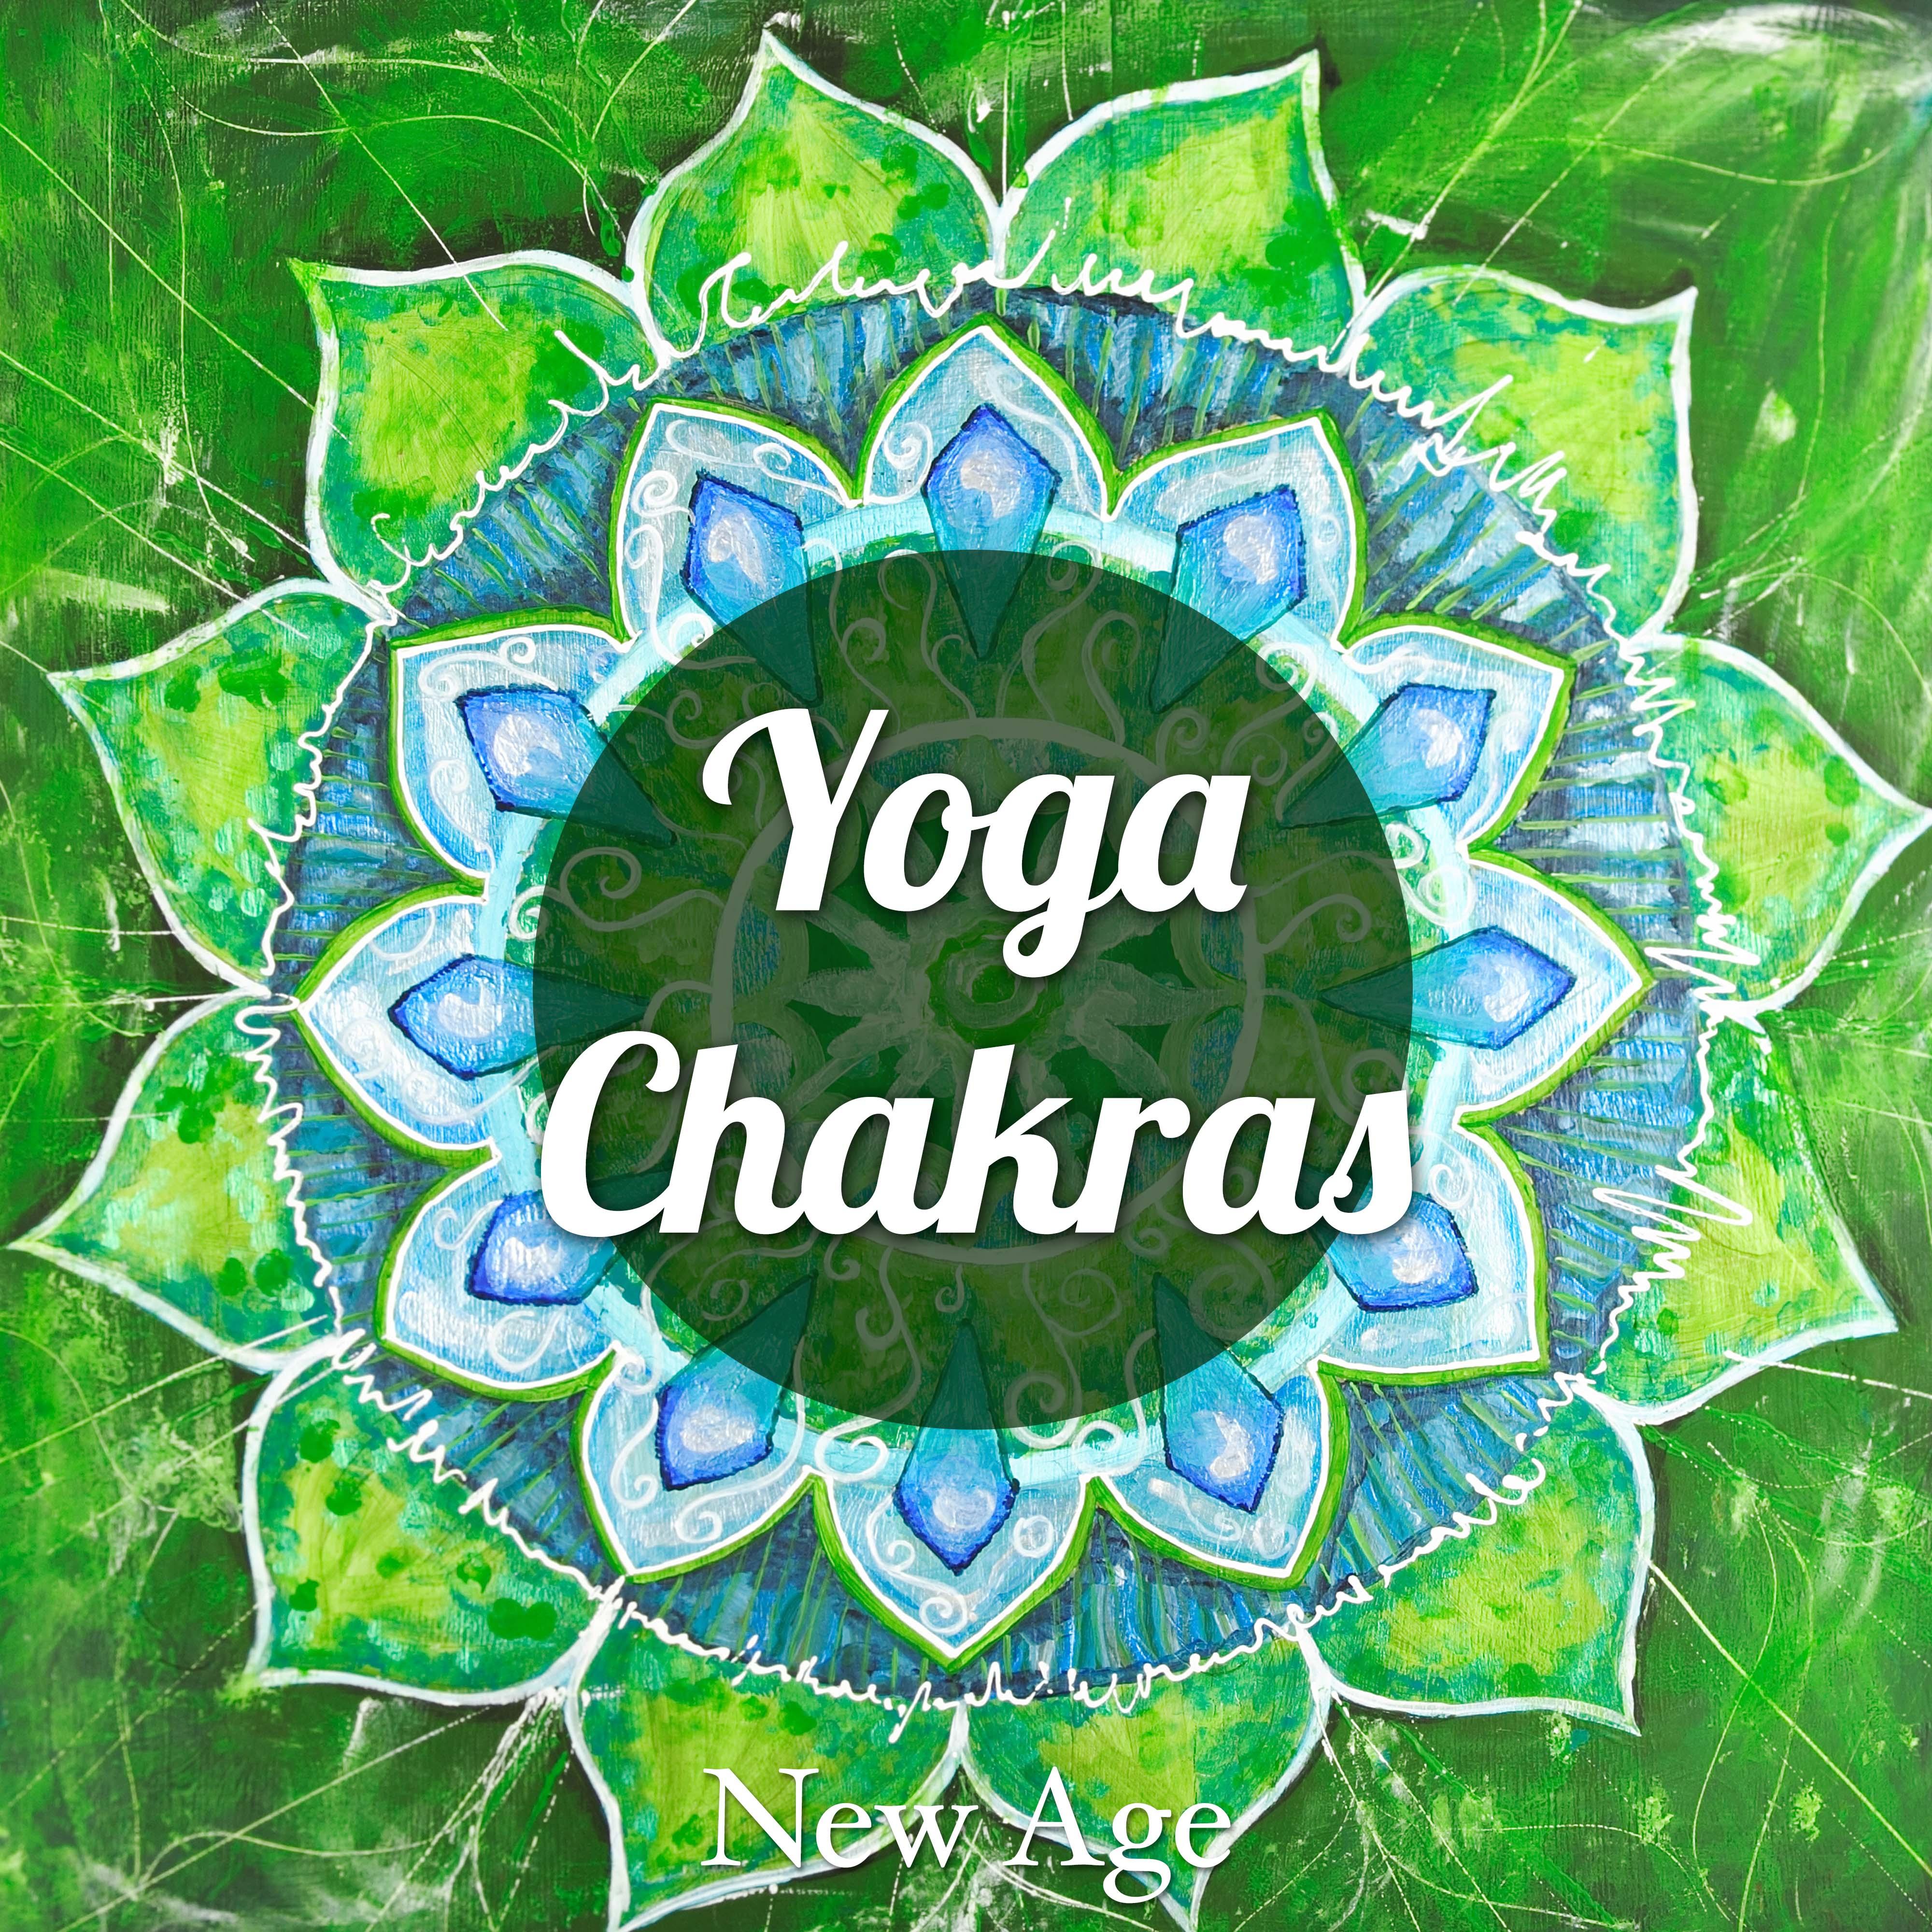 Yoga Chakras - Meditation Music For 7 Chakras